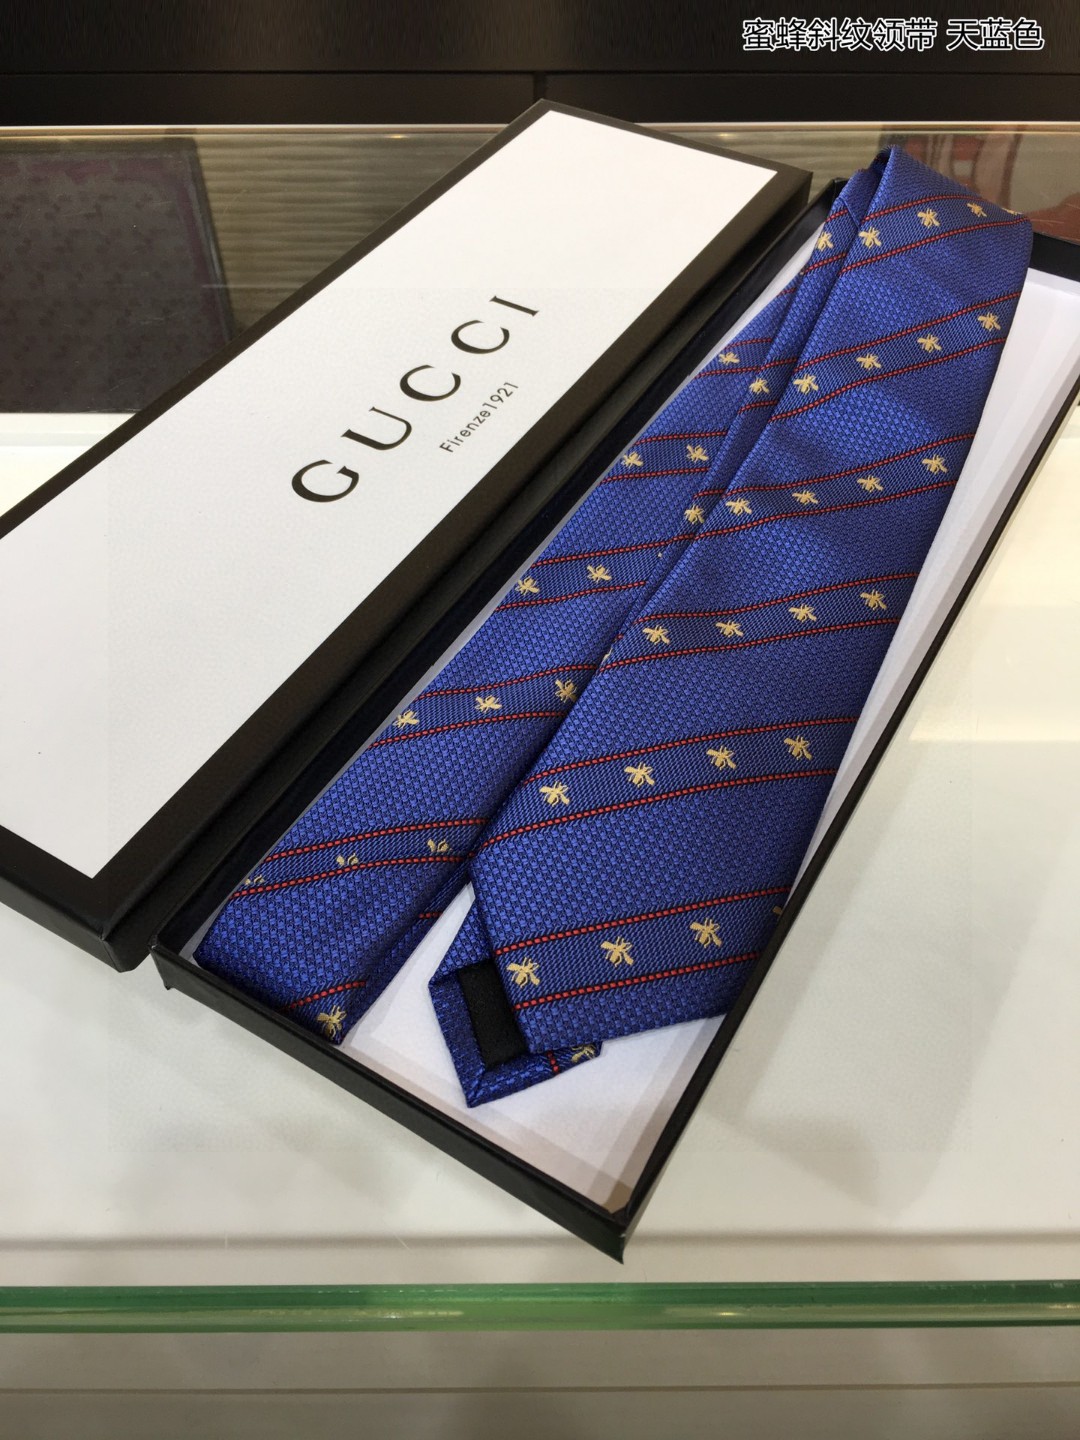 上新G家男士领带系列蜜蜂斜纹领带稀有